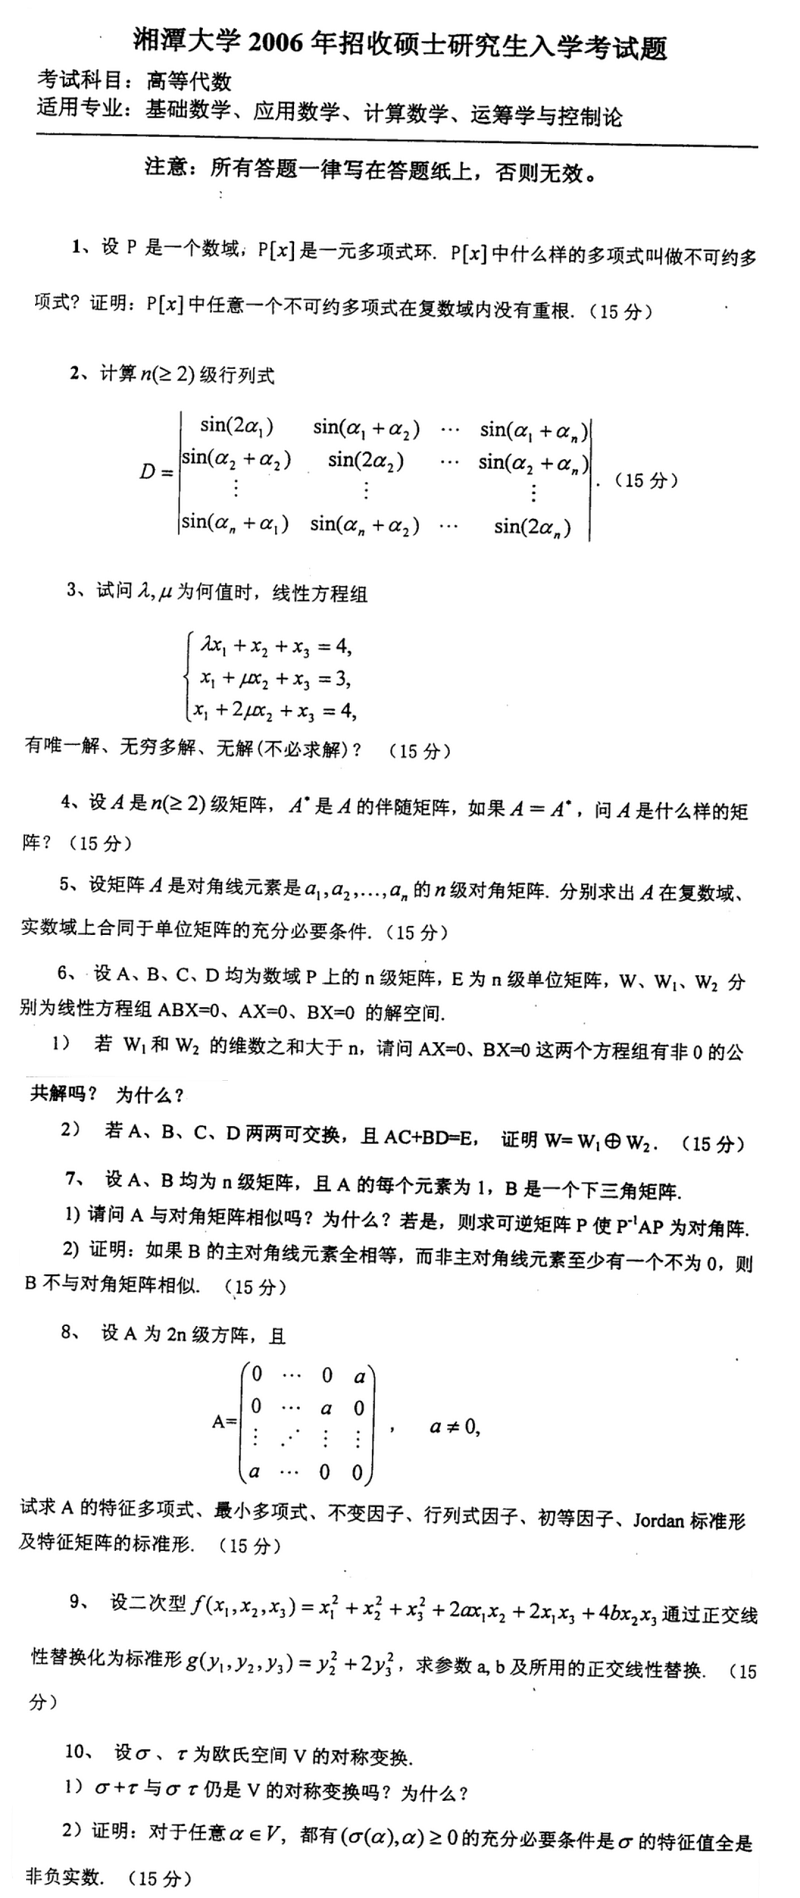 2006湘潭大学考研数学真题（数学分析）.png